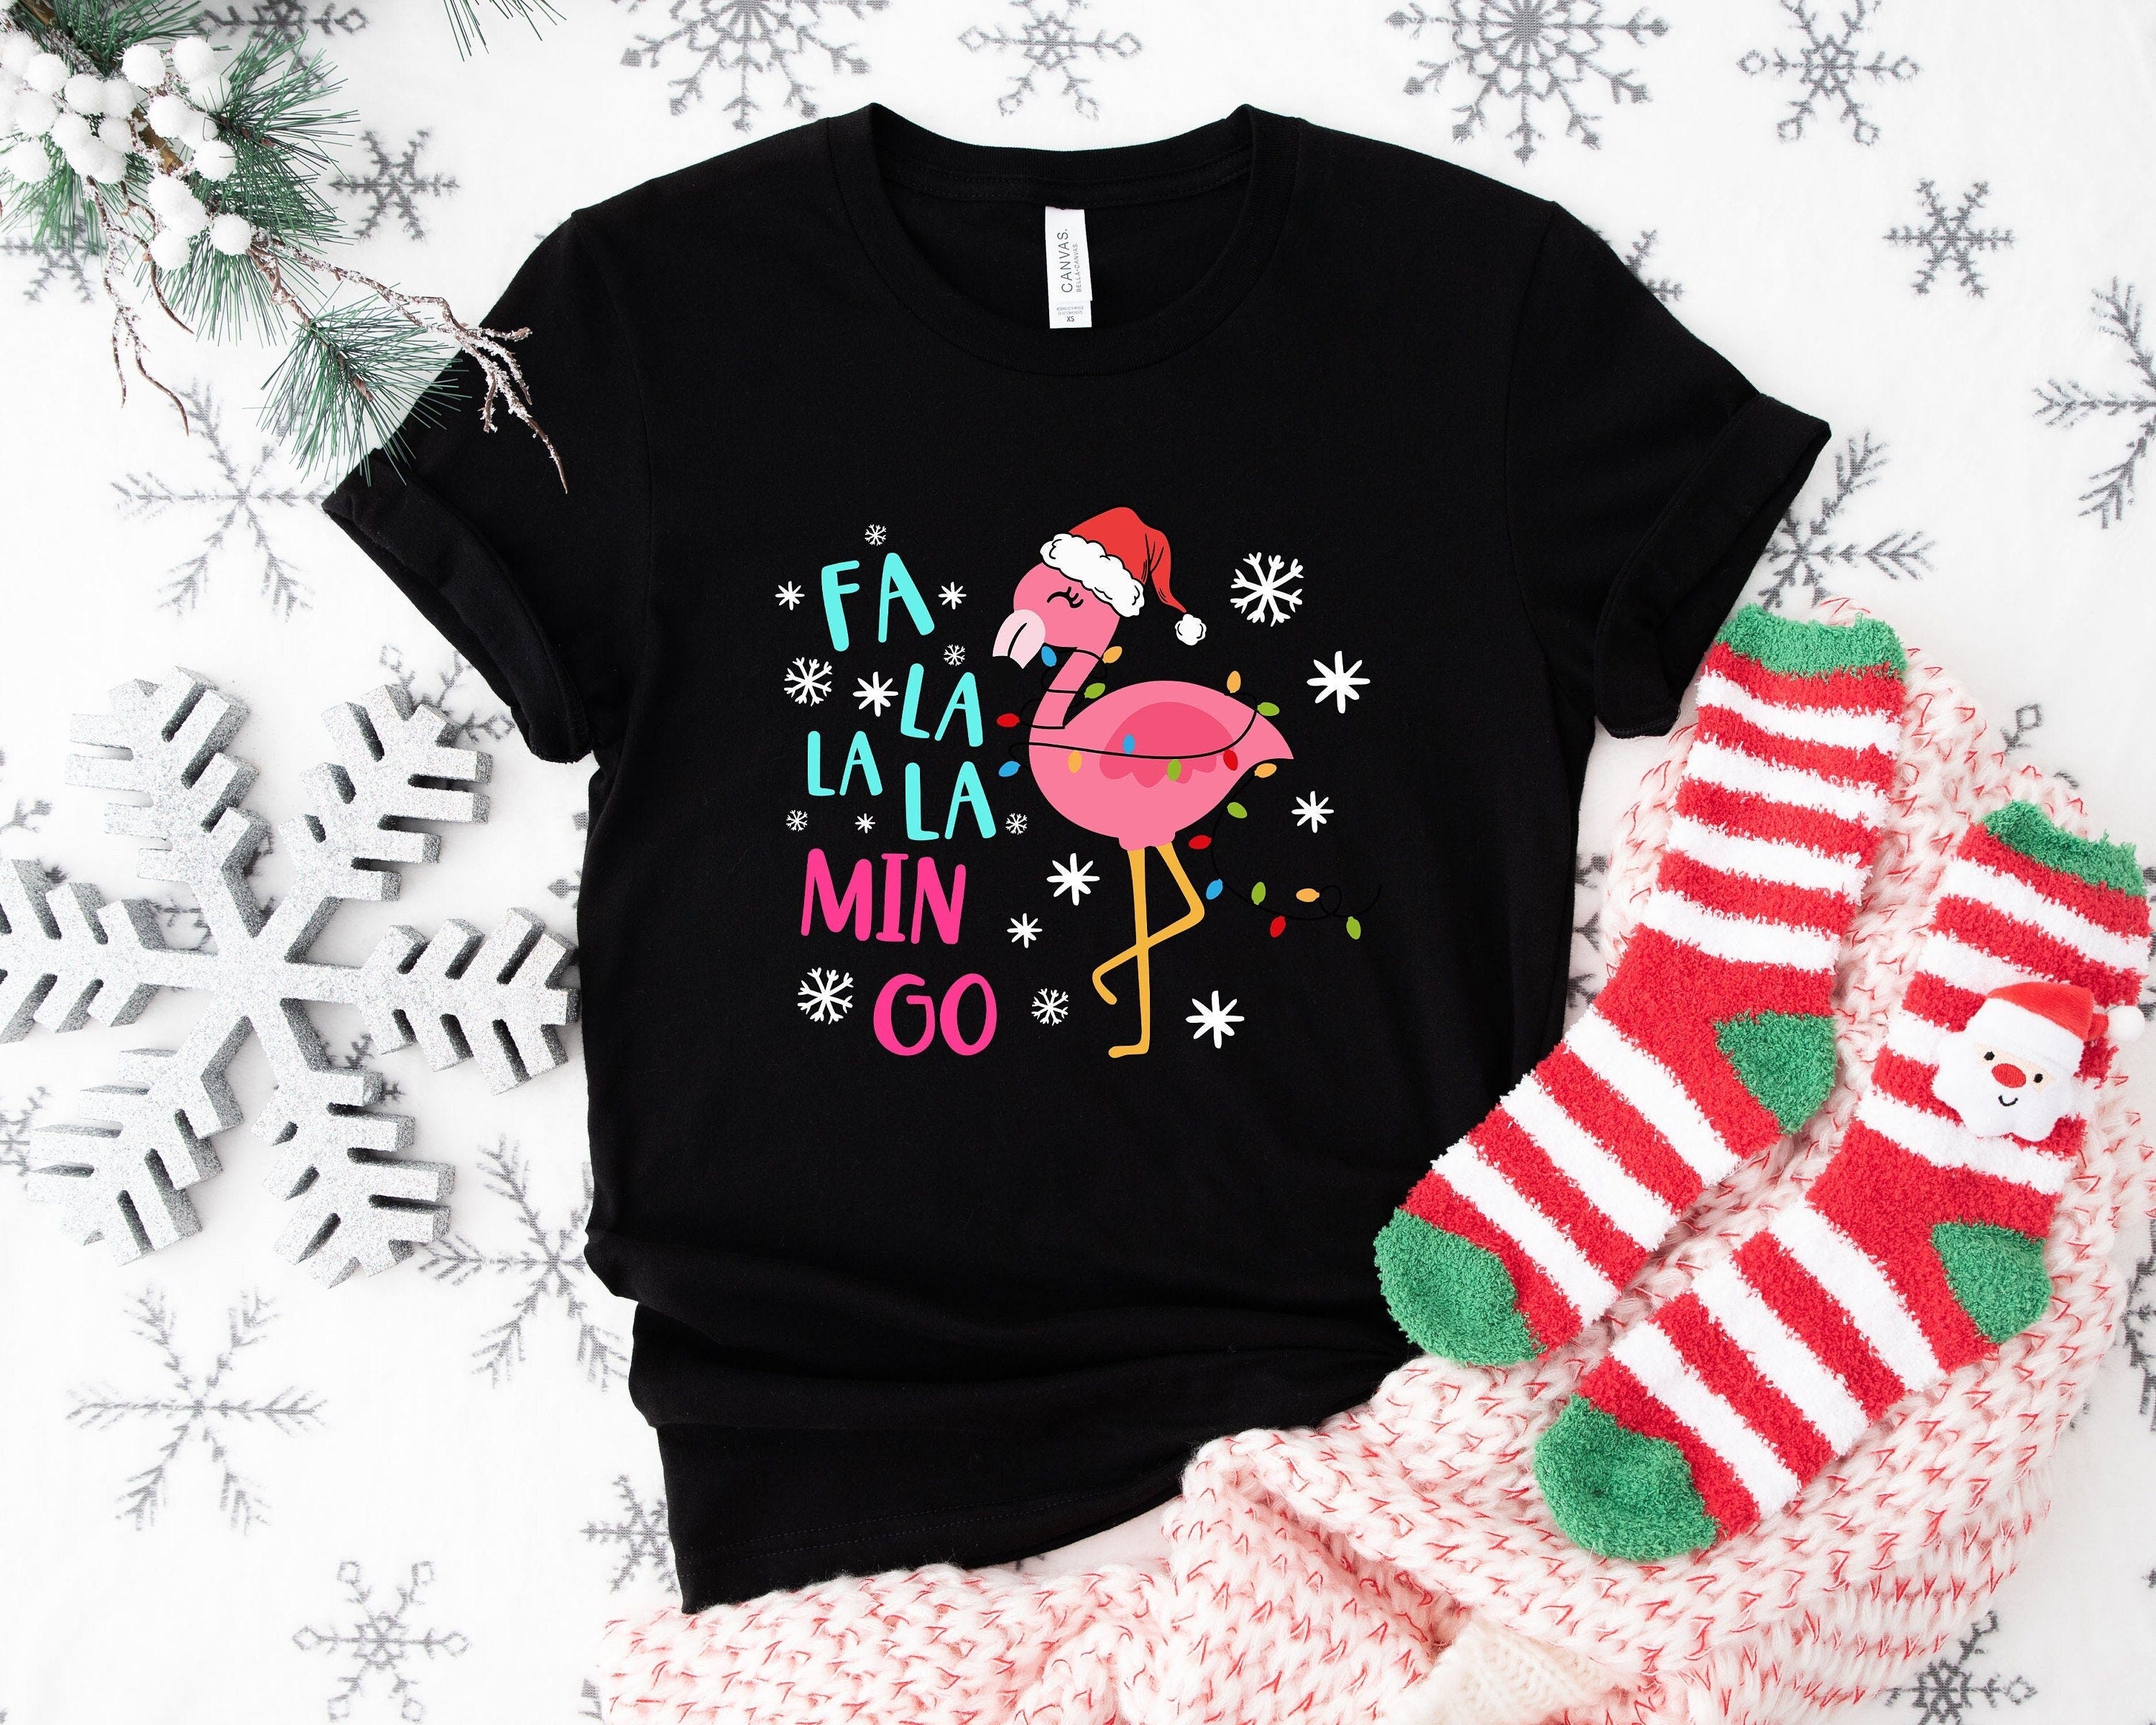 Fa La La La Mingo Shirt, Flamingo Christmas Lights Shirt, Christmas Family Shirt, Merry Christmas Shirt, Christmas Gift, Funny Christmas Tee